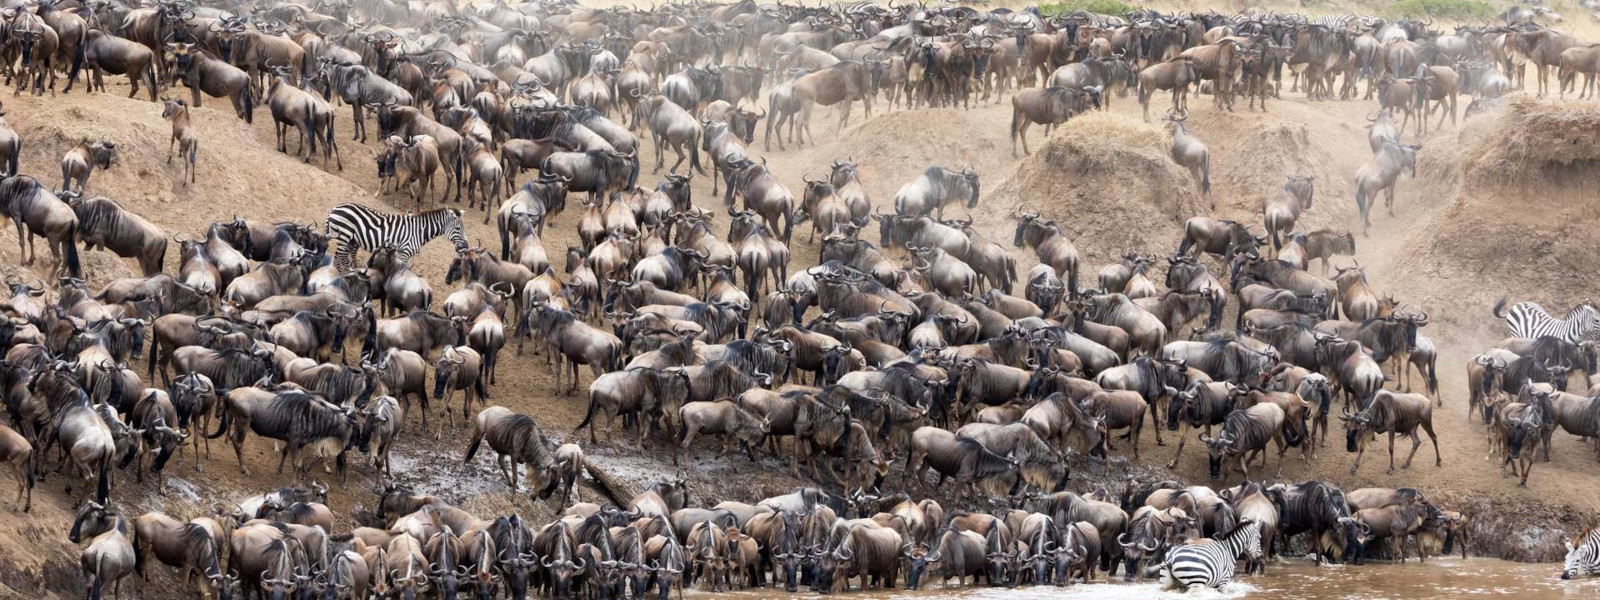 Serengeti Wildebeests Migration